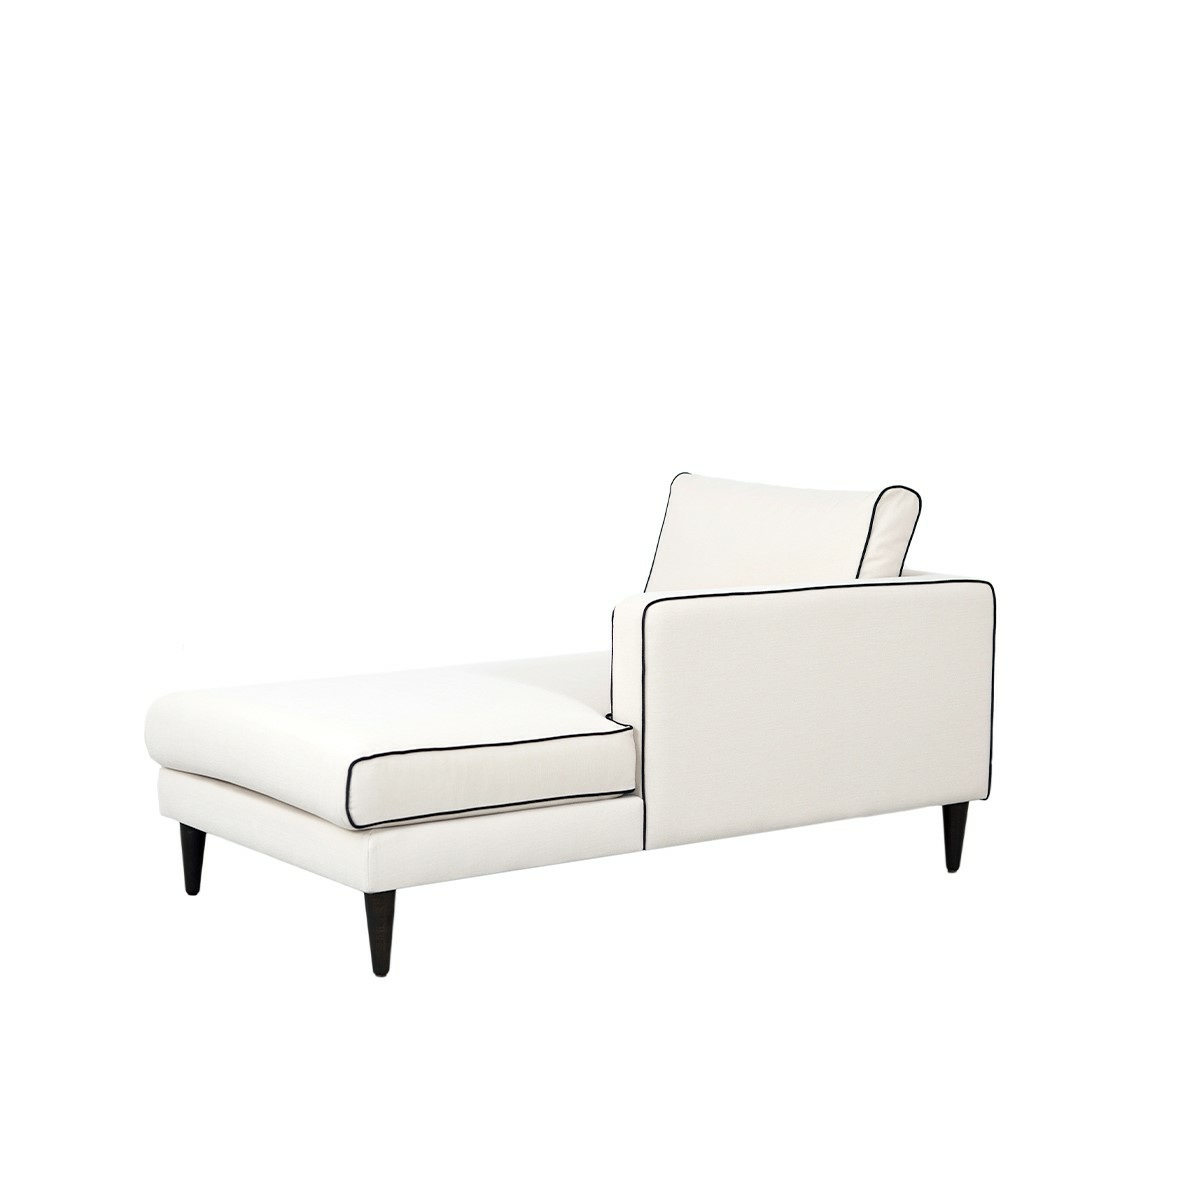 Noa sofa - Right armrest, L180 x P90 x H80 cm - Cotton - image 3